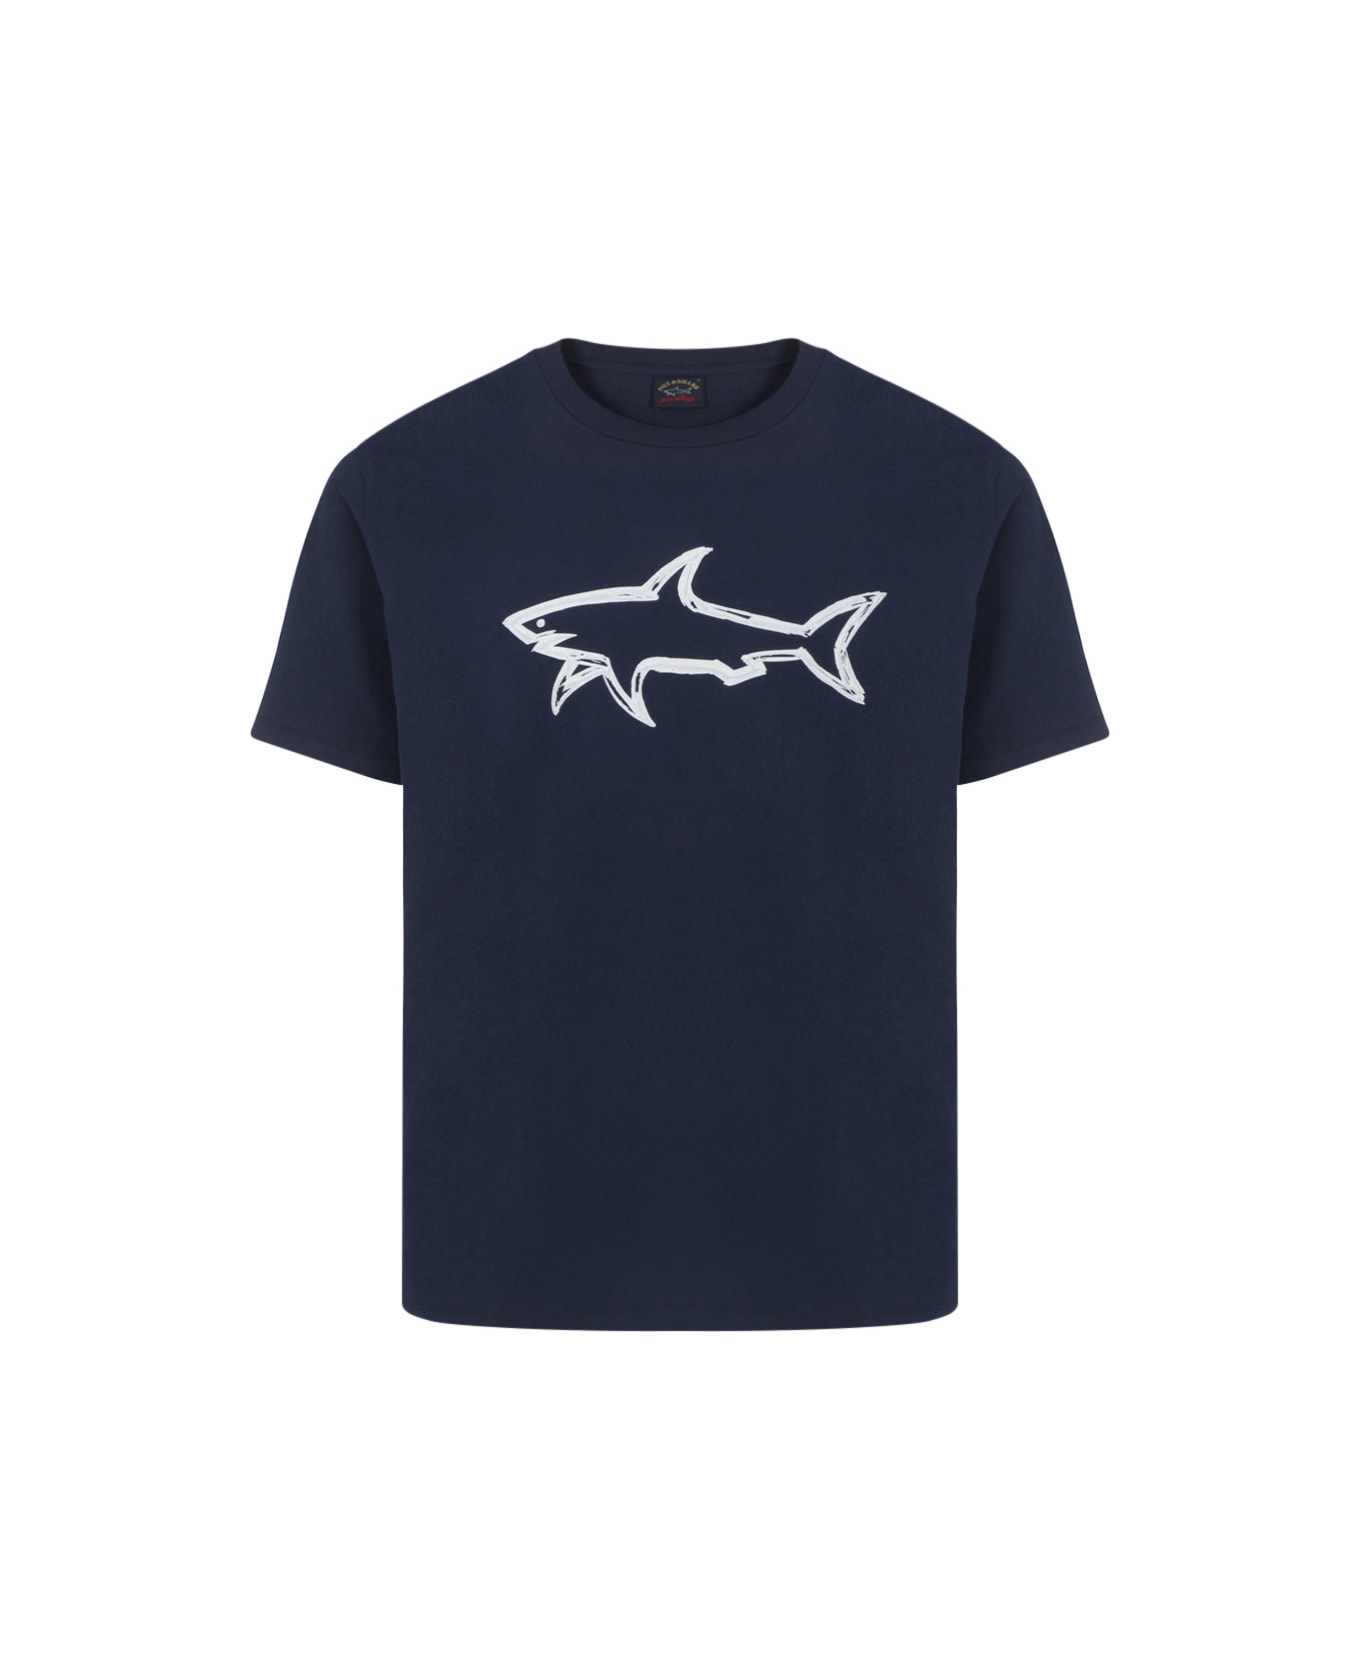 Paul&Shark T-shirt - BLUE